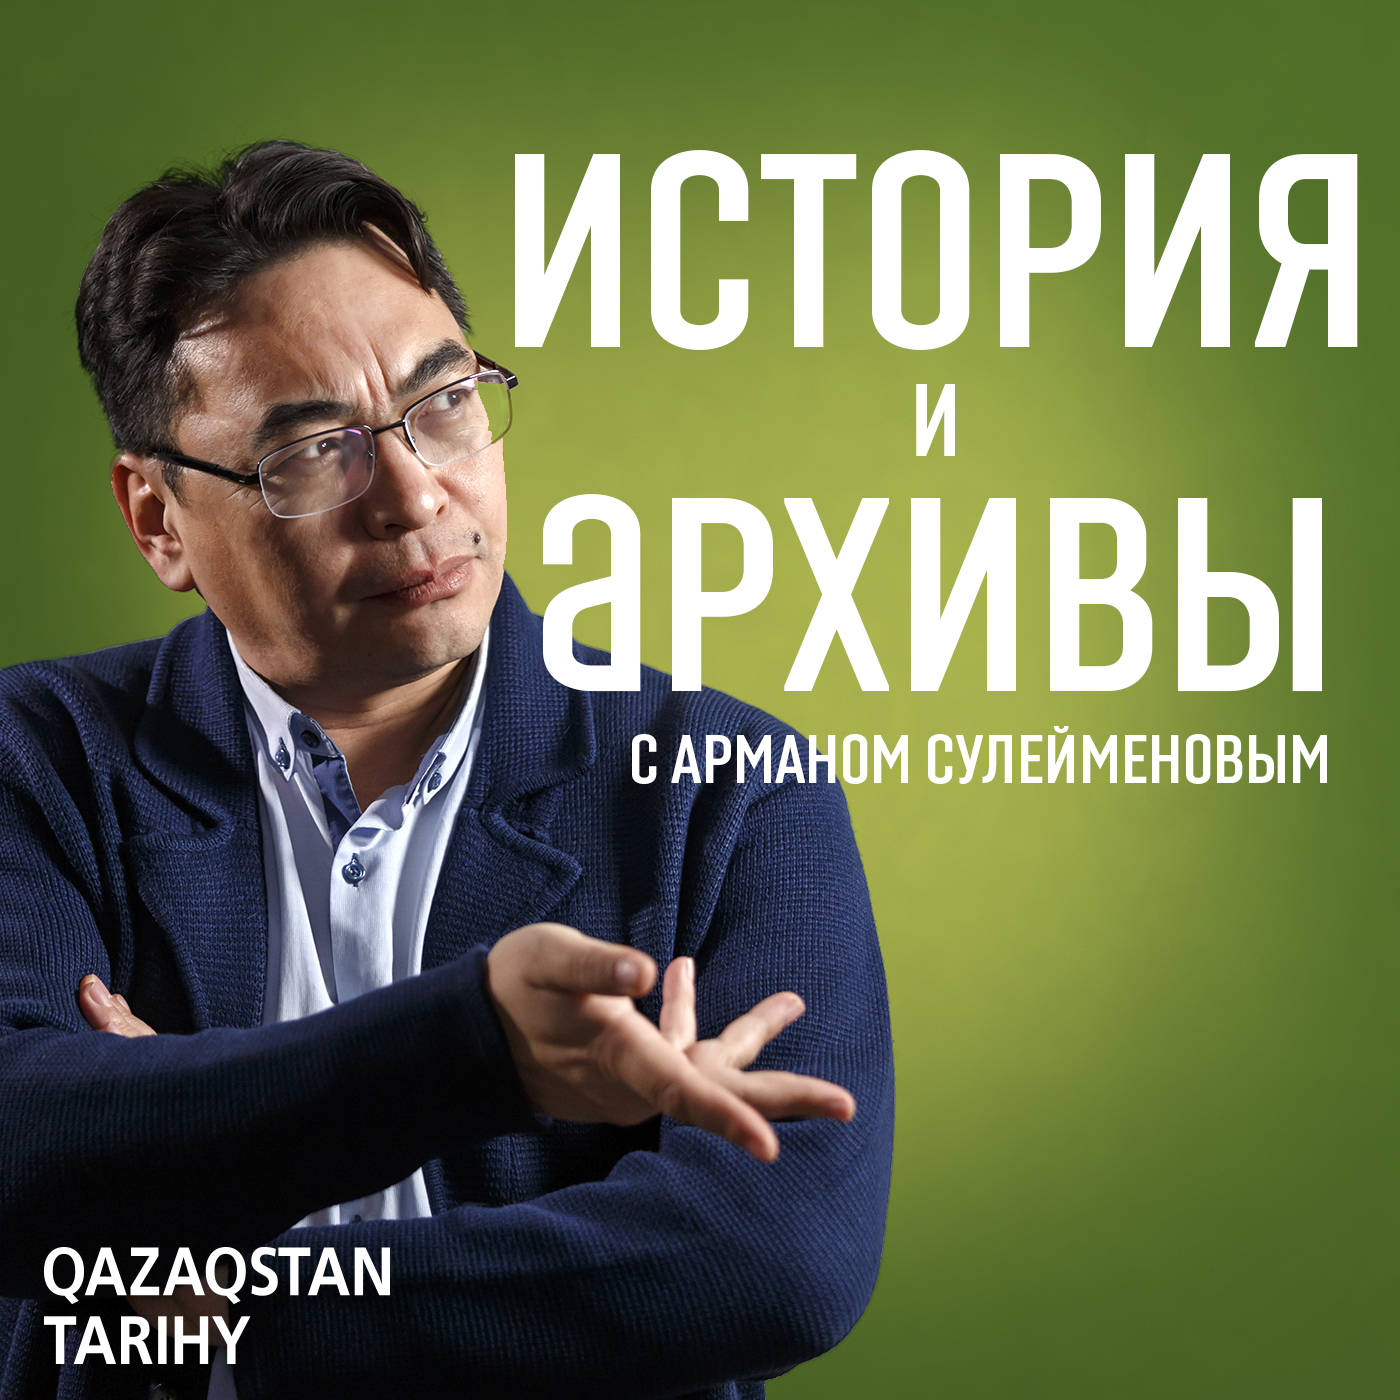 Г. Загряжский о похоронных традициях казахов - e-history.kz